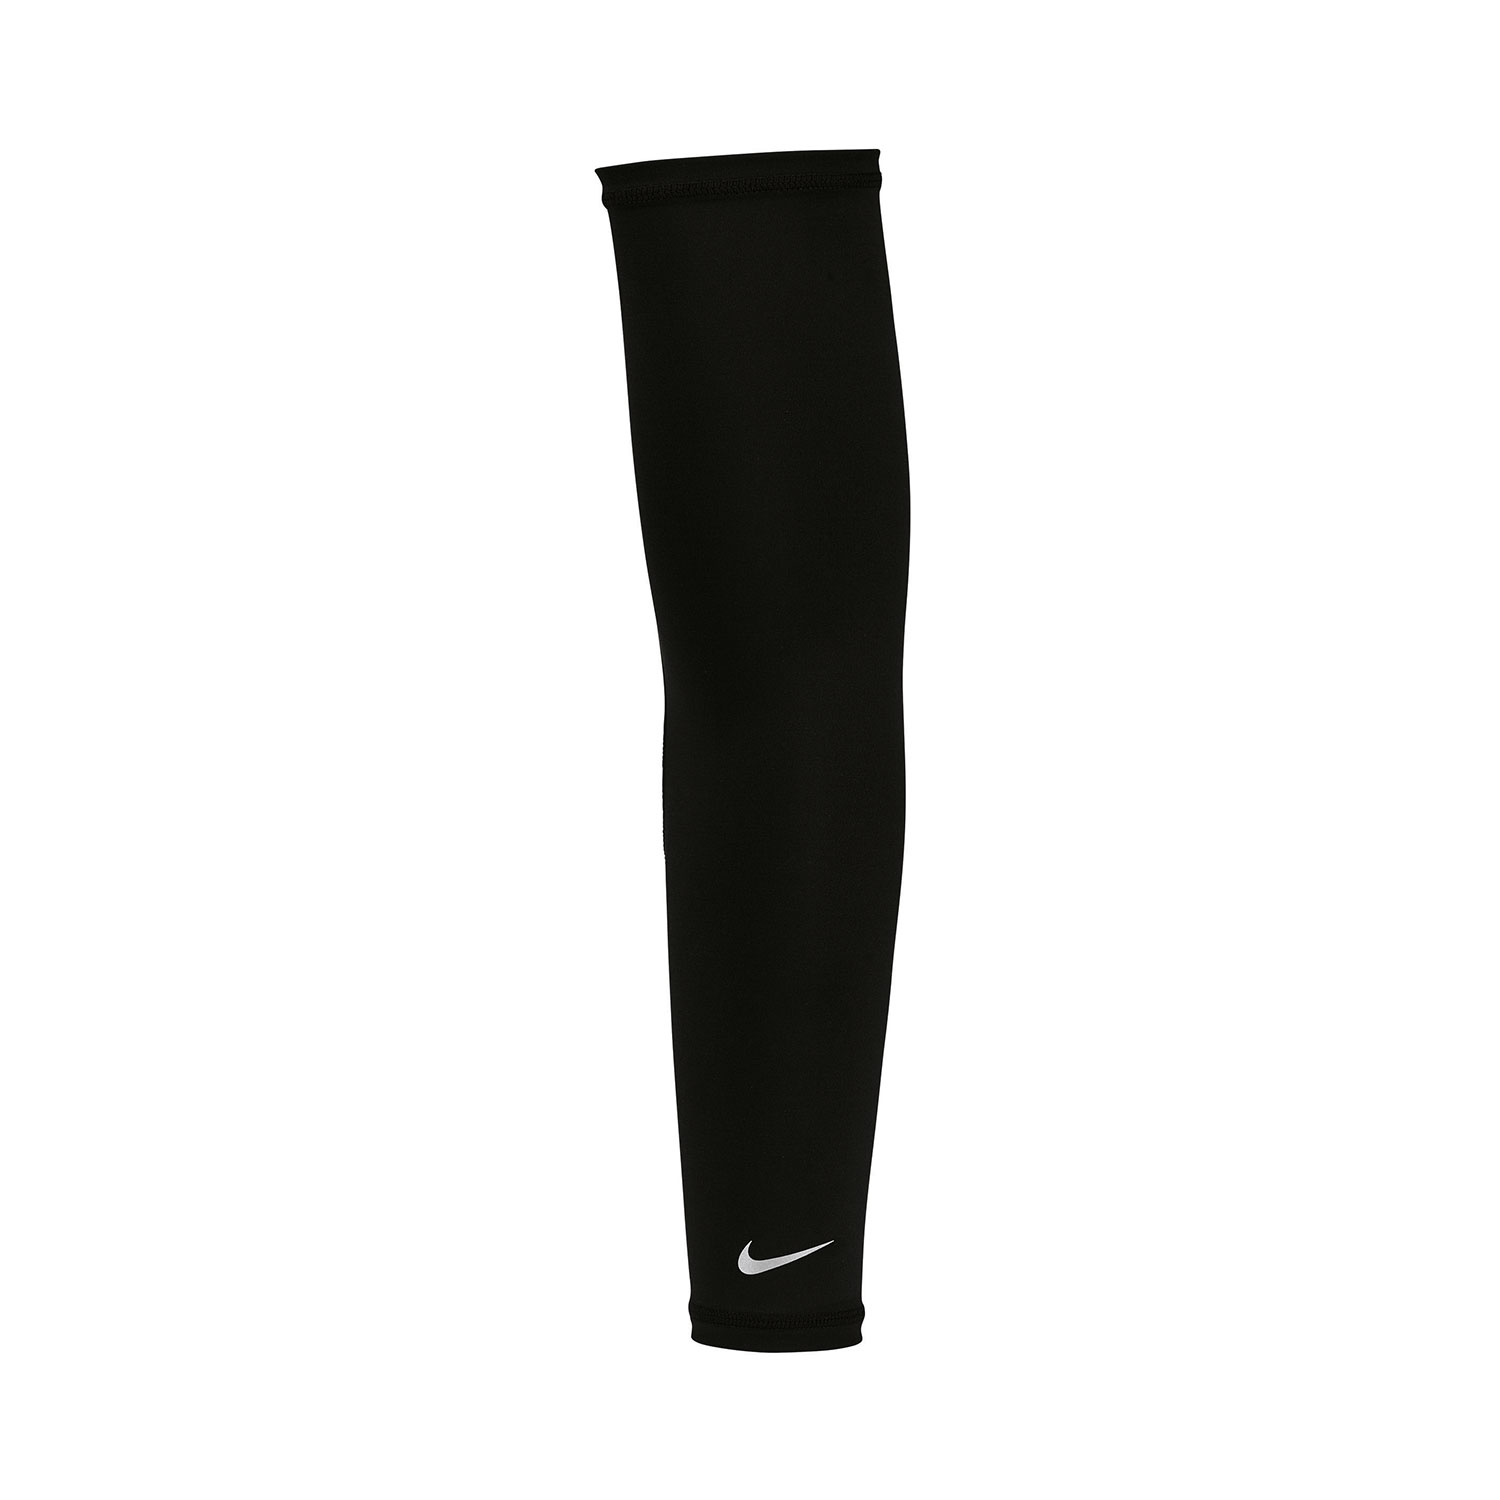 Nike Dri-FIT UV Mangas - Black/Silver